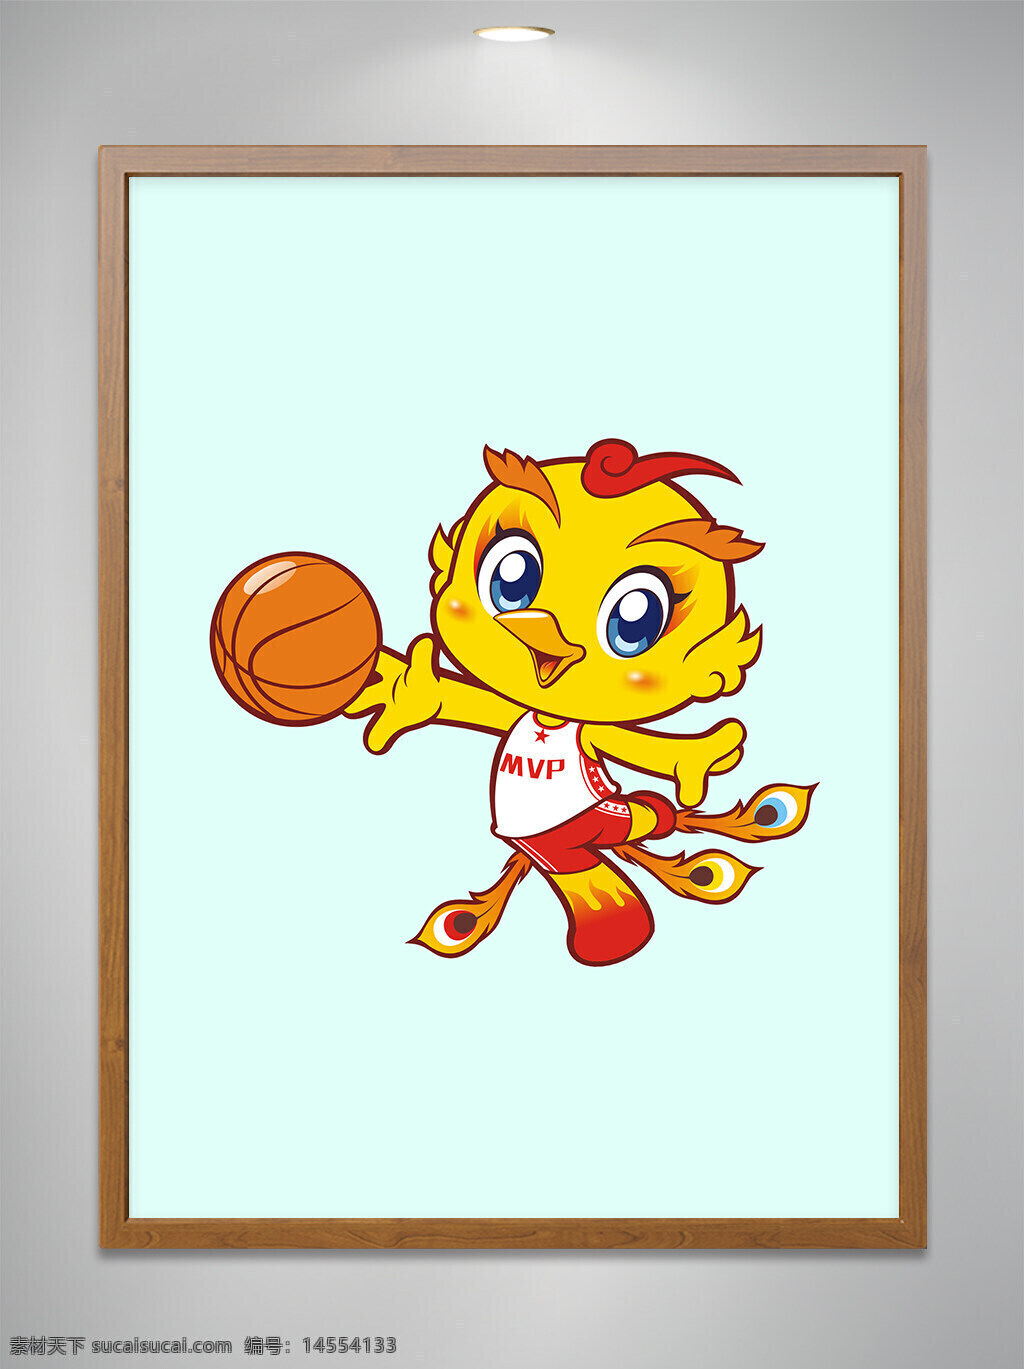 卡通原创 卡通吉祥物 卡通动物 卡通可爱小凤凰 卡通可爱小凤凰打篮球 打篮球 cdr矢量图